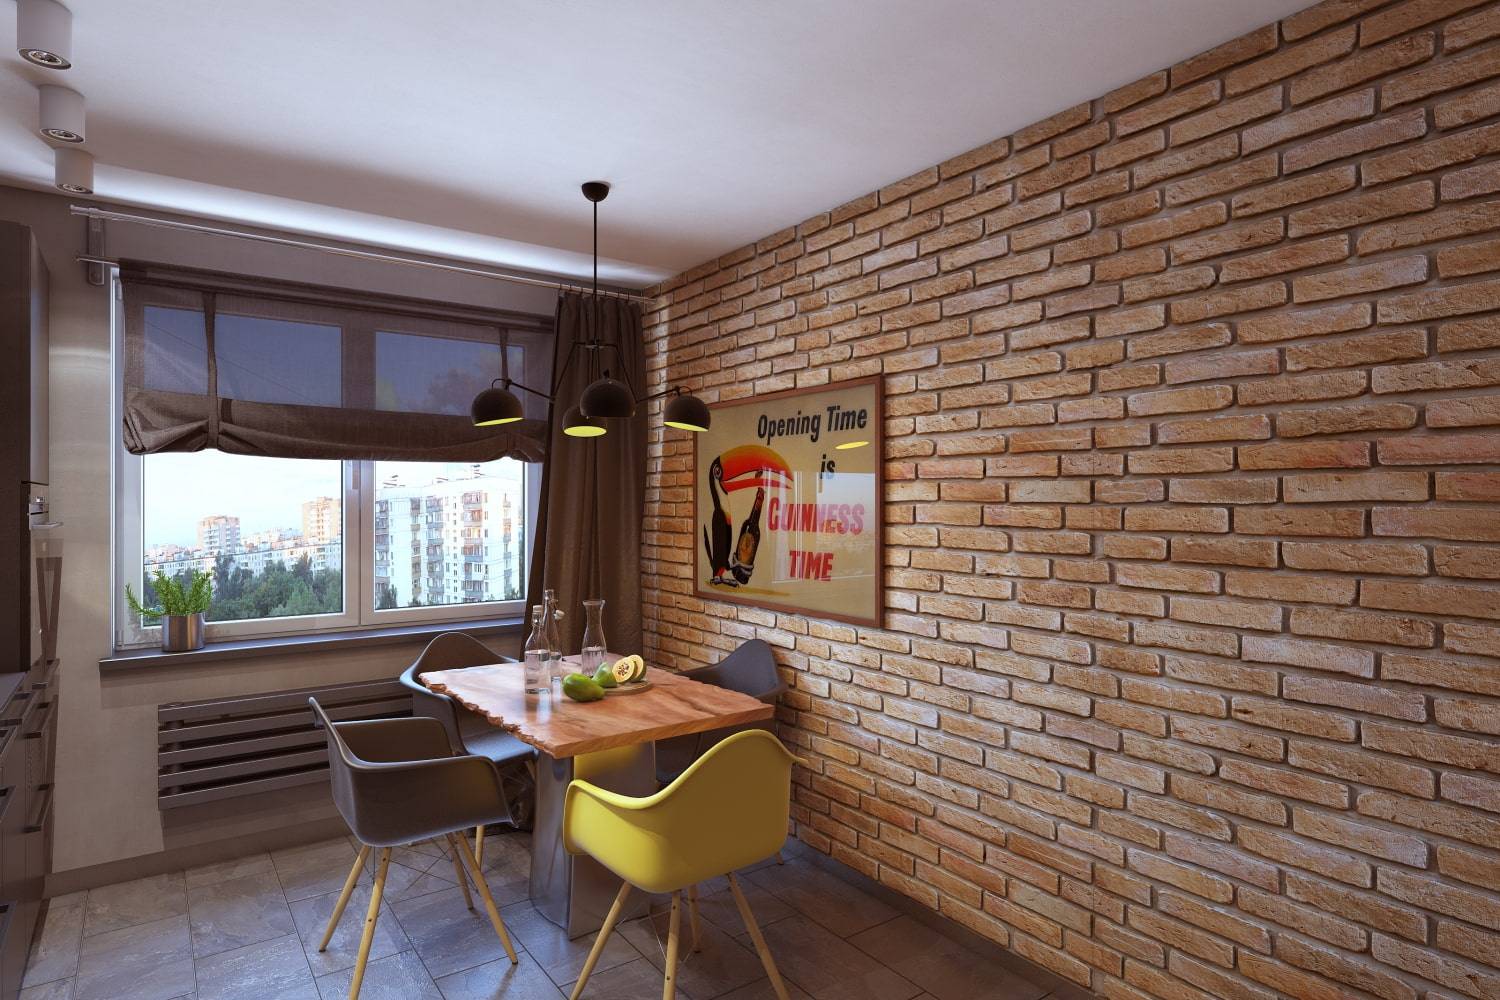 Кирпичная стена в интерьере кухни – дизайн в интерьере кухни с кирпичной стеной, отделка стен под кирпич